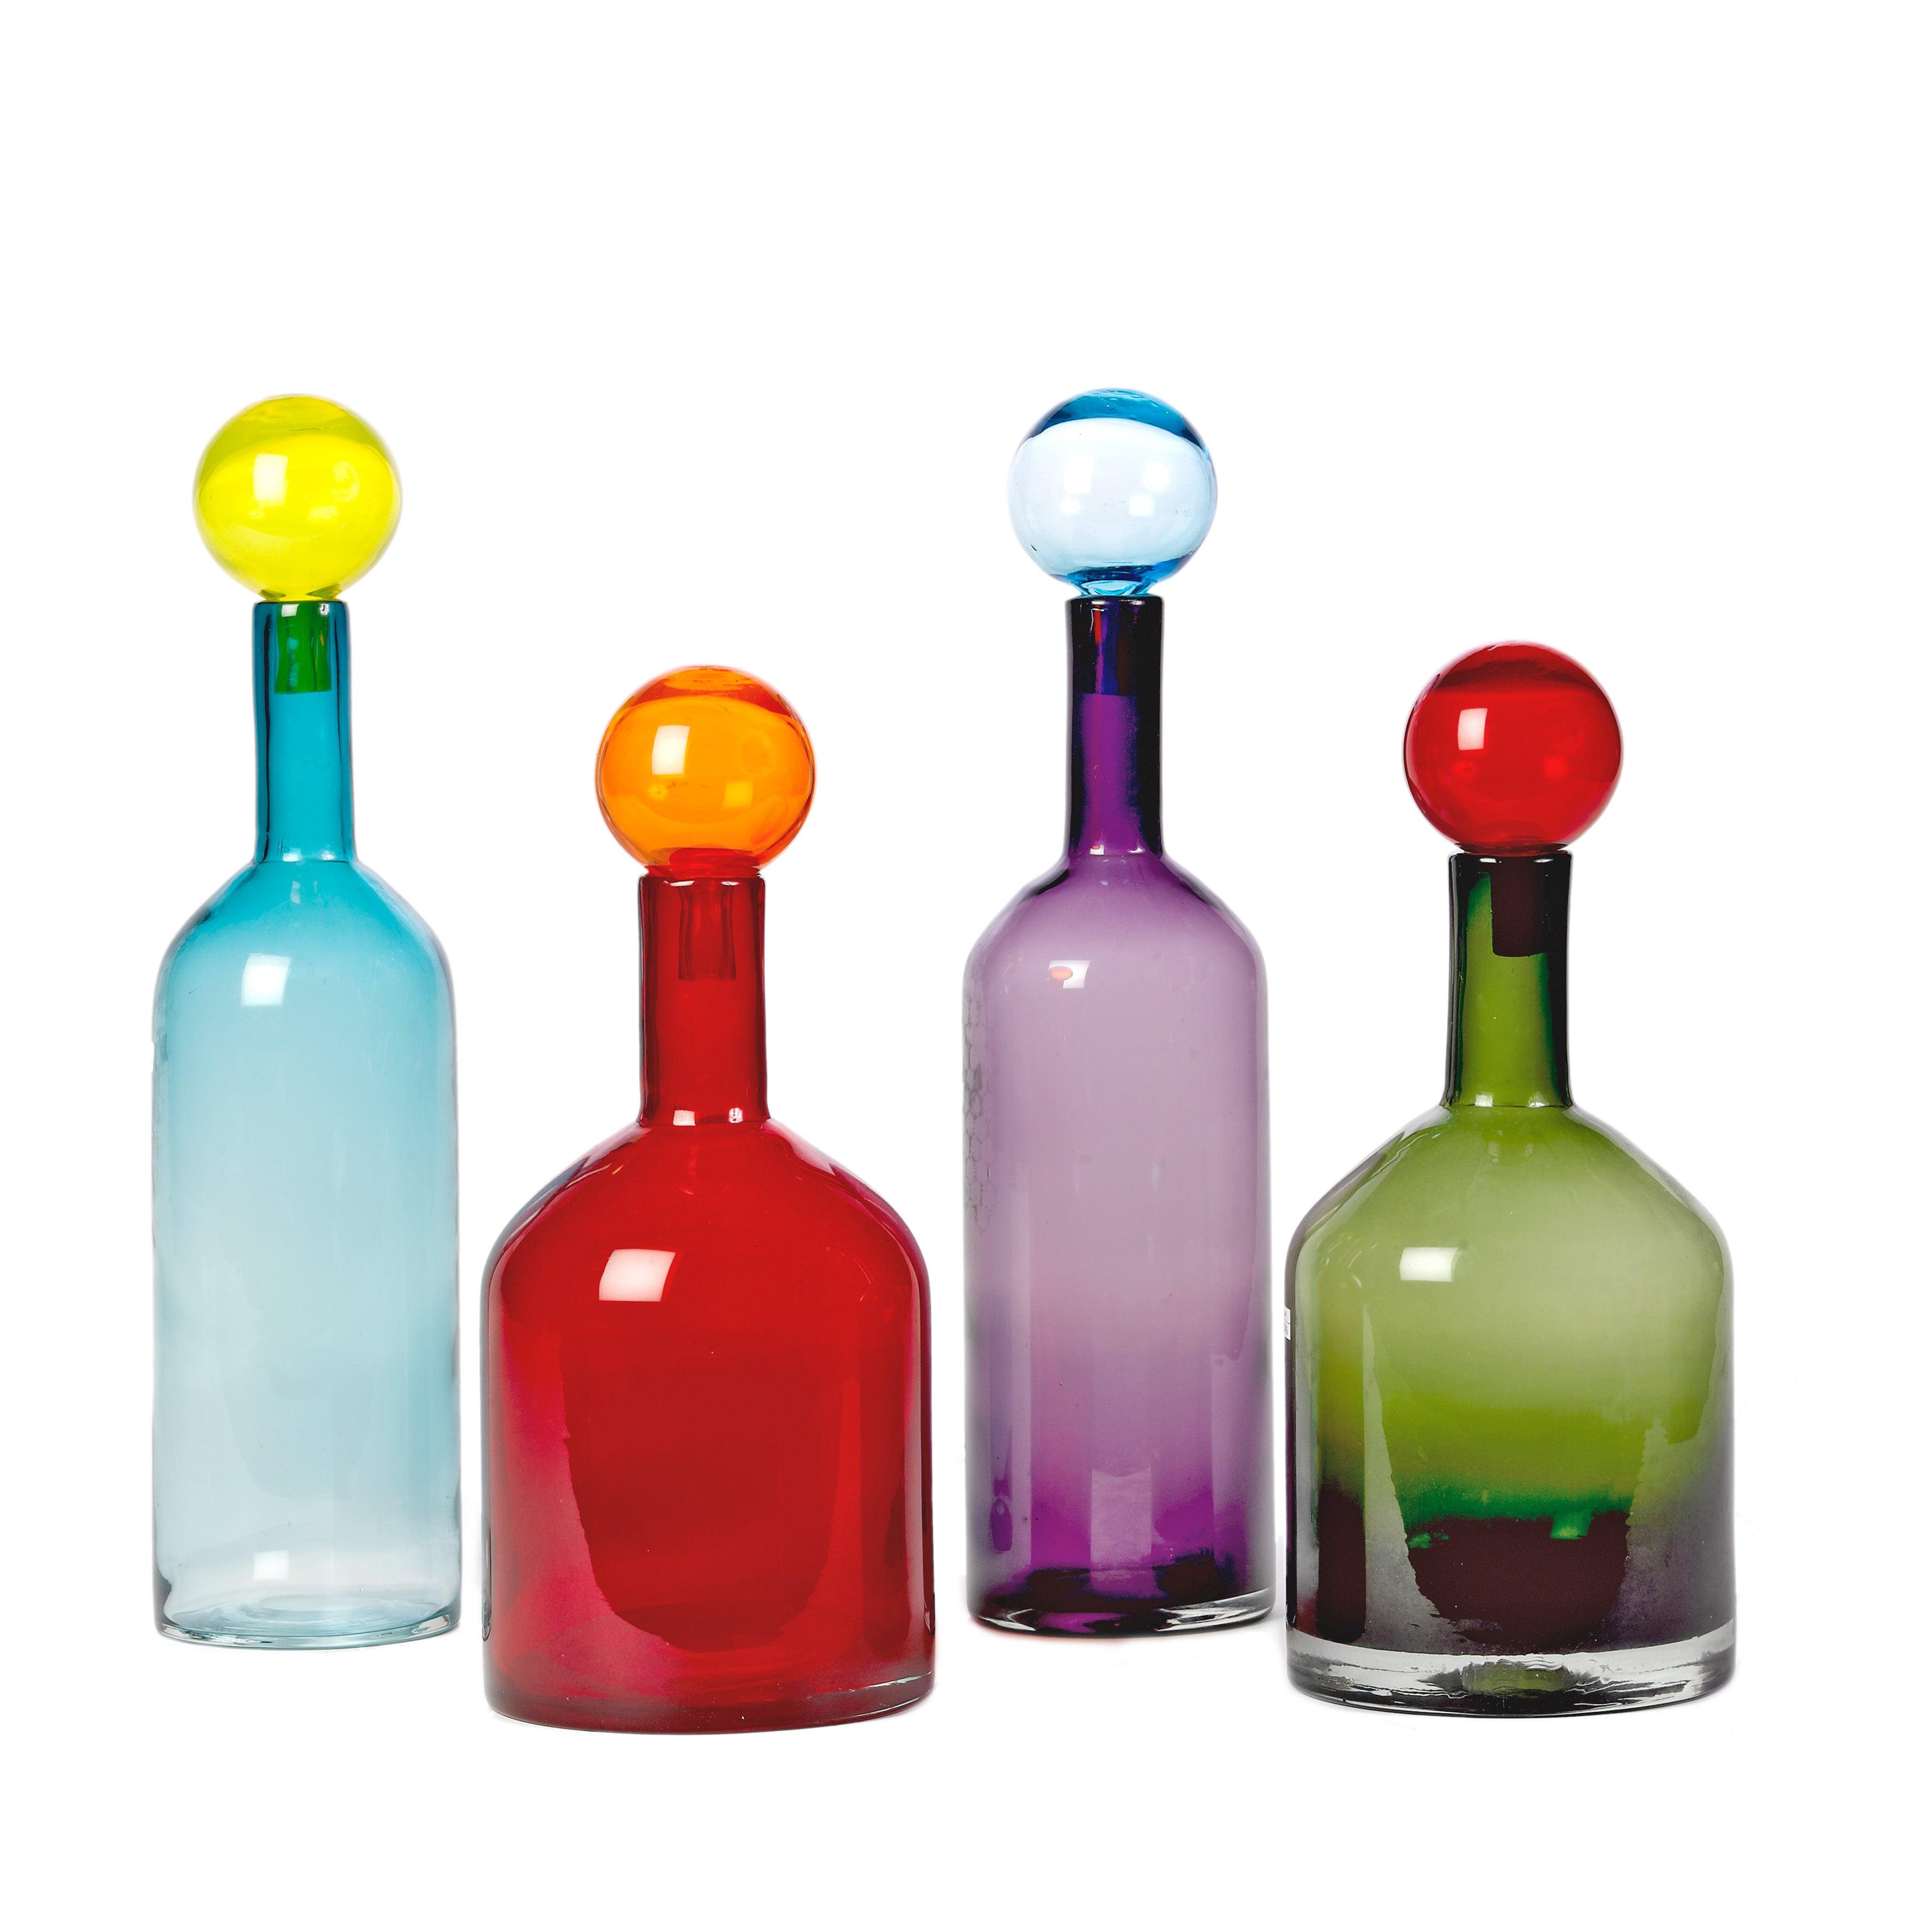 Zestaw butelek BUBBLES AND BOTTLES kolorowe szkło Pols Potten Ø18 x 33 cm / Ø13 x 44 cm   Eye on Design